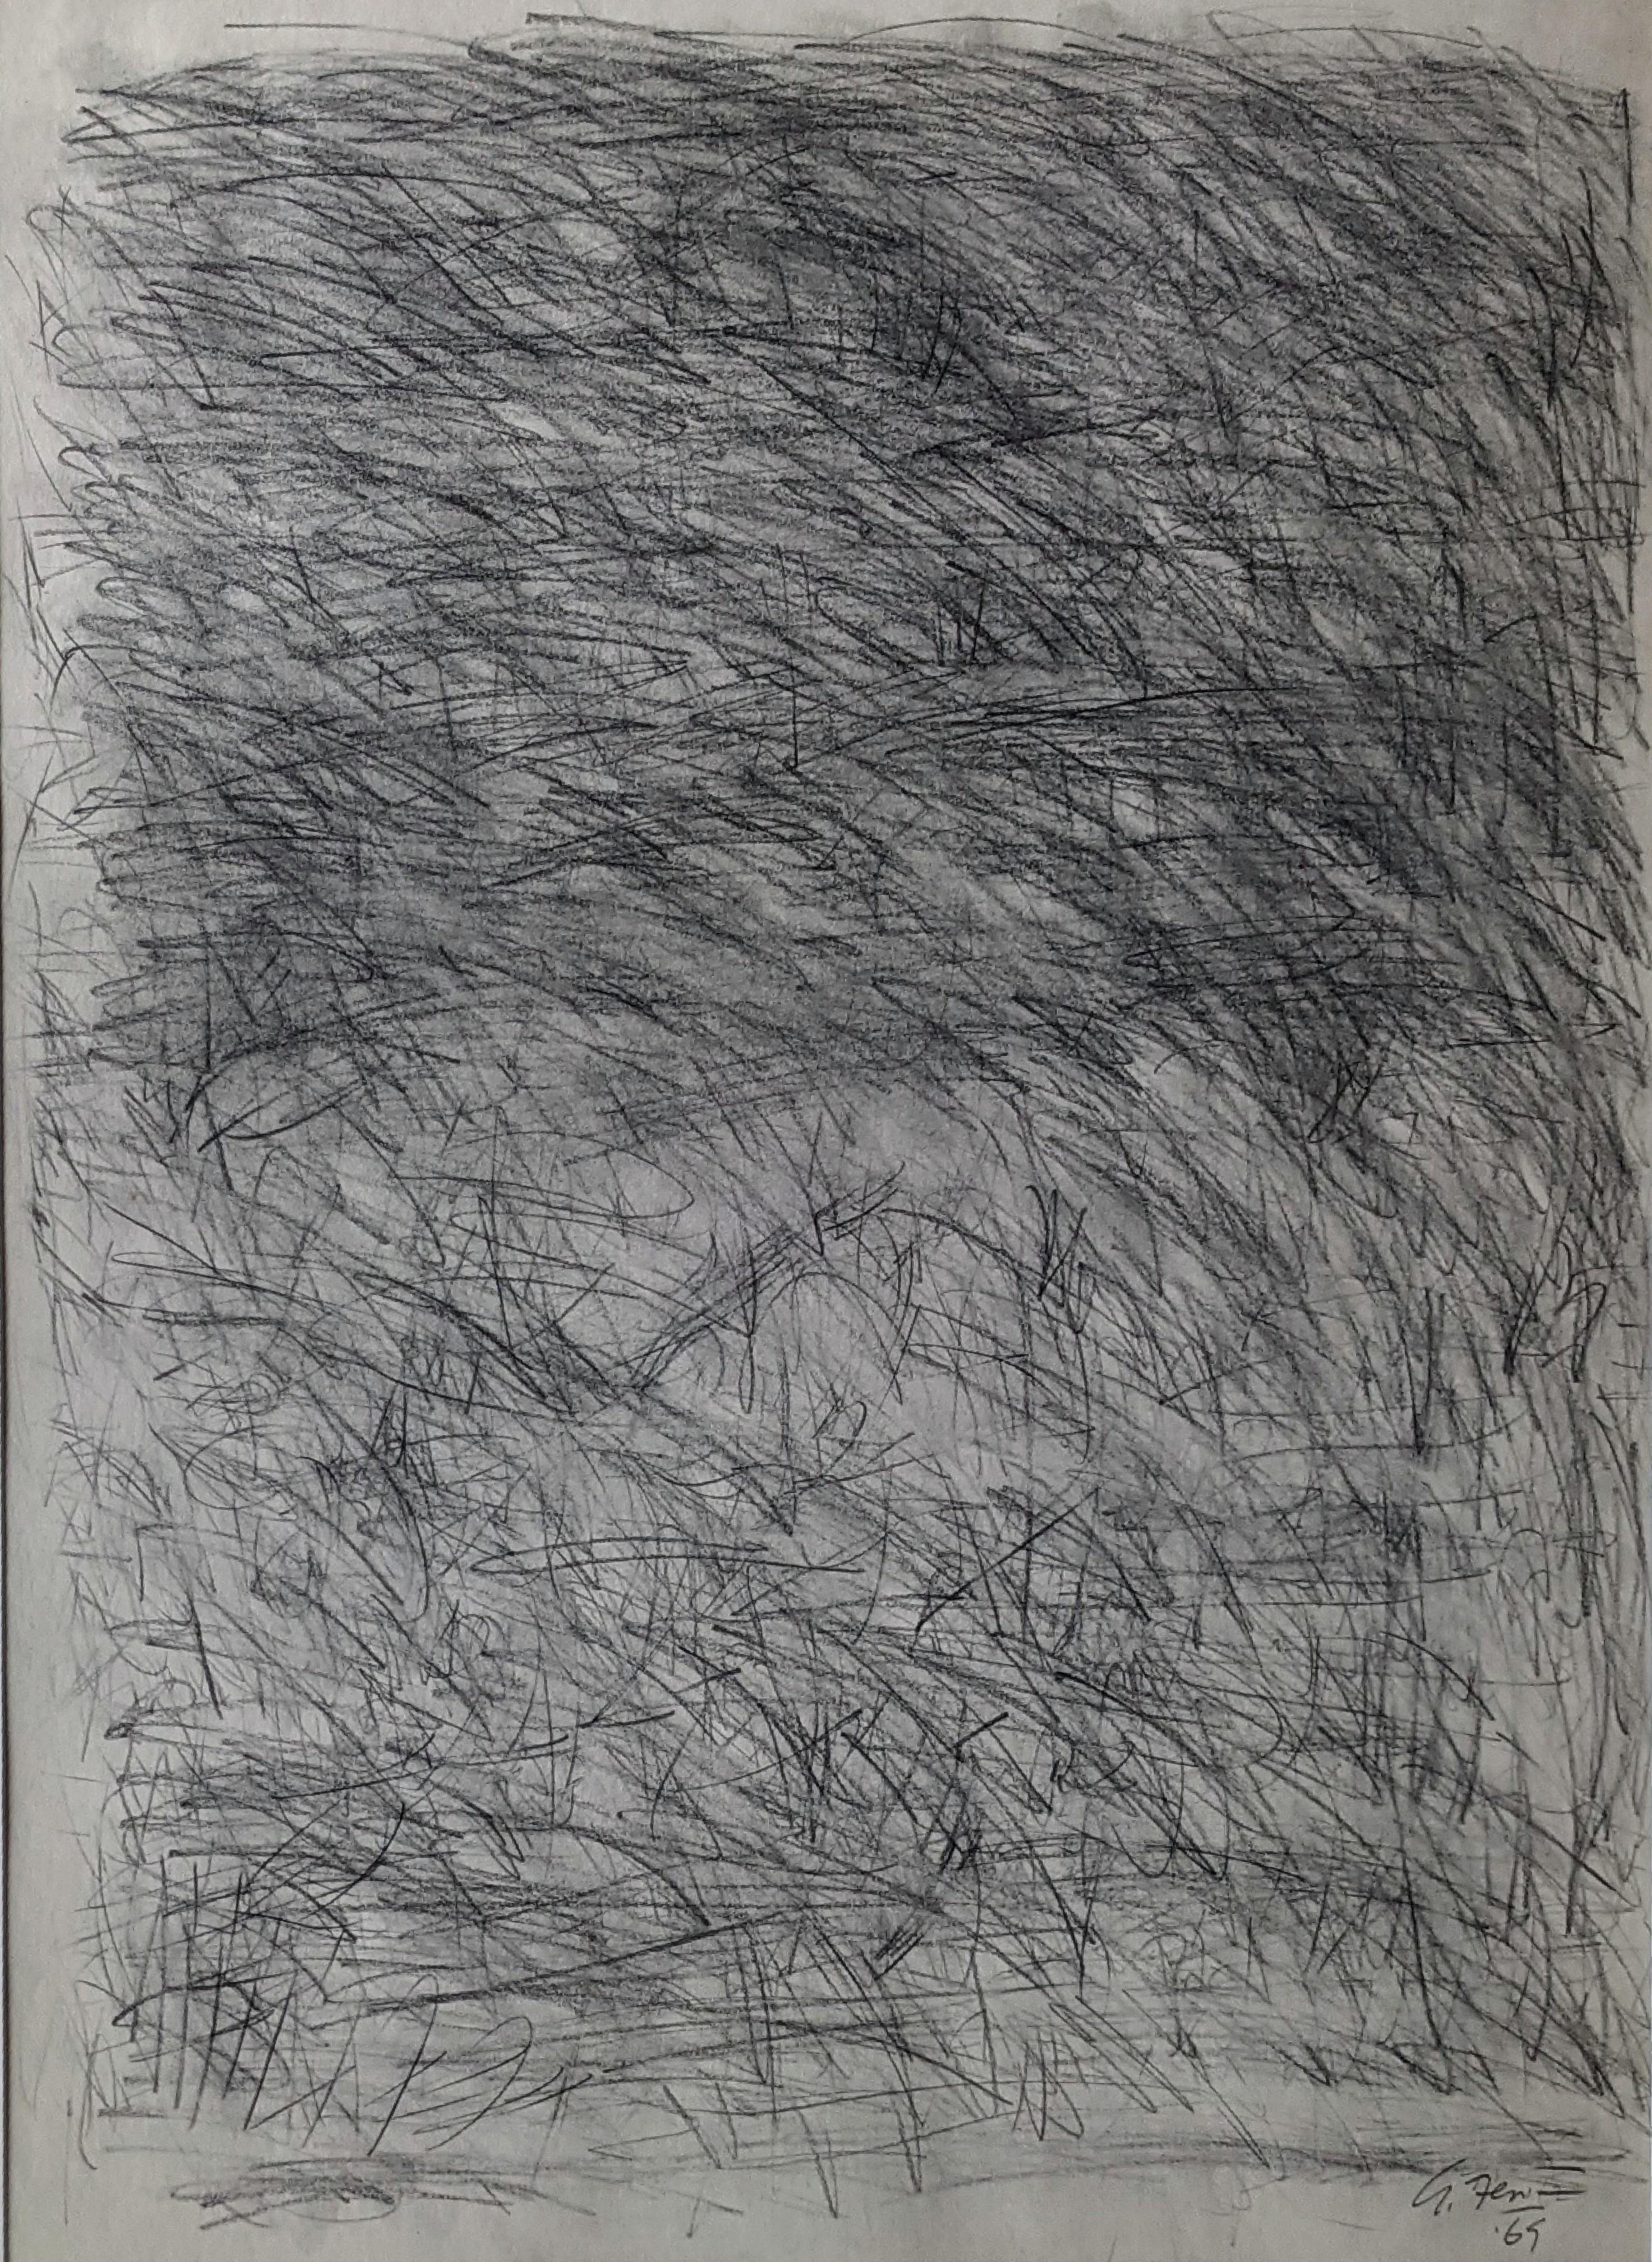 Alan Fenton (1927 - 2000)
Ohne Titel, 1965
Zeichenkohle und Graphit auf Papier
23 x 17 Zoll
Signiert und datiert unten rechts

Fentons ruhige und kontemplative ungegenständliche Gemälde und Zeichnungen waren weithin bekannt für ihre anspruchsvollen,